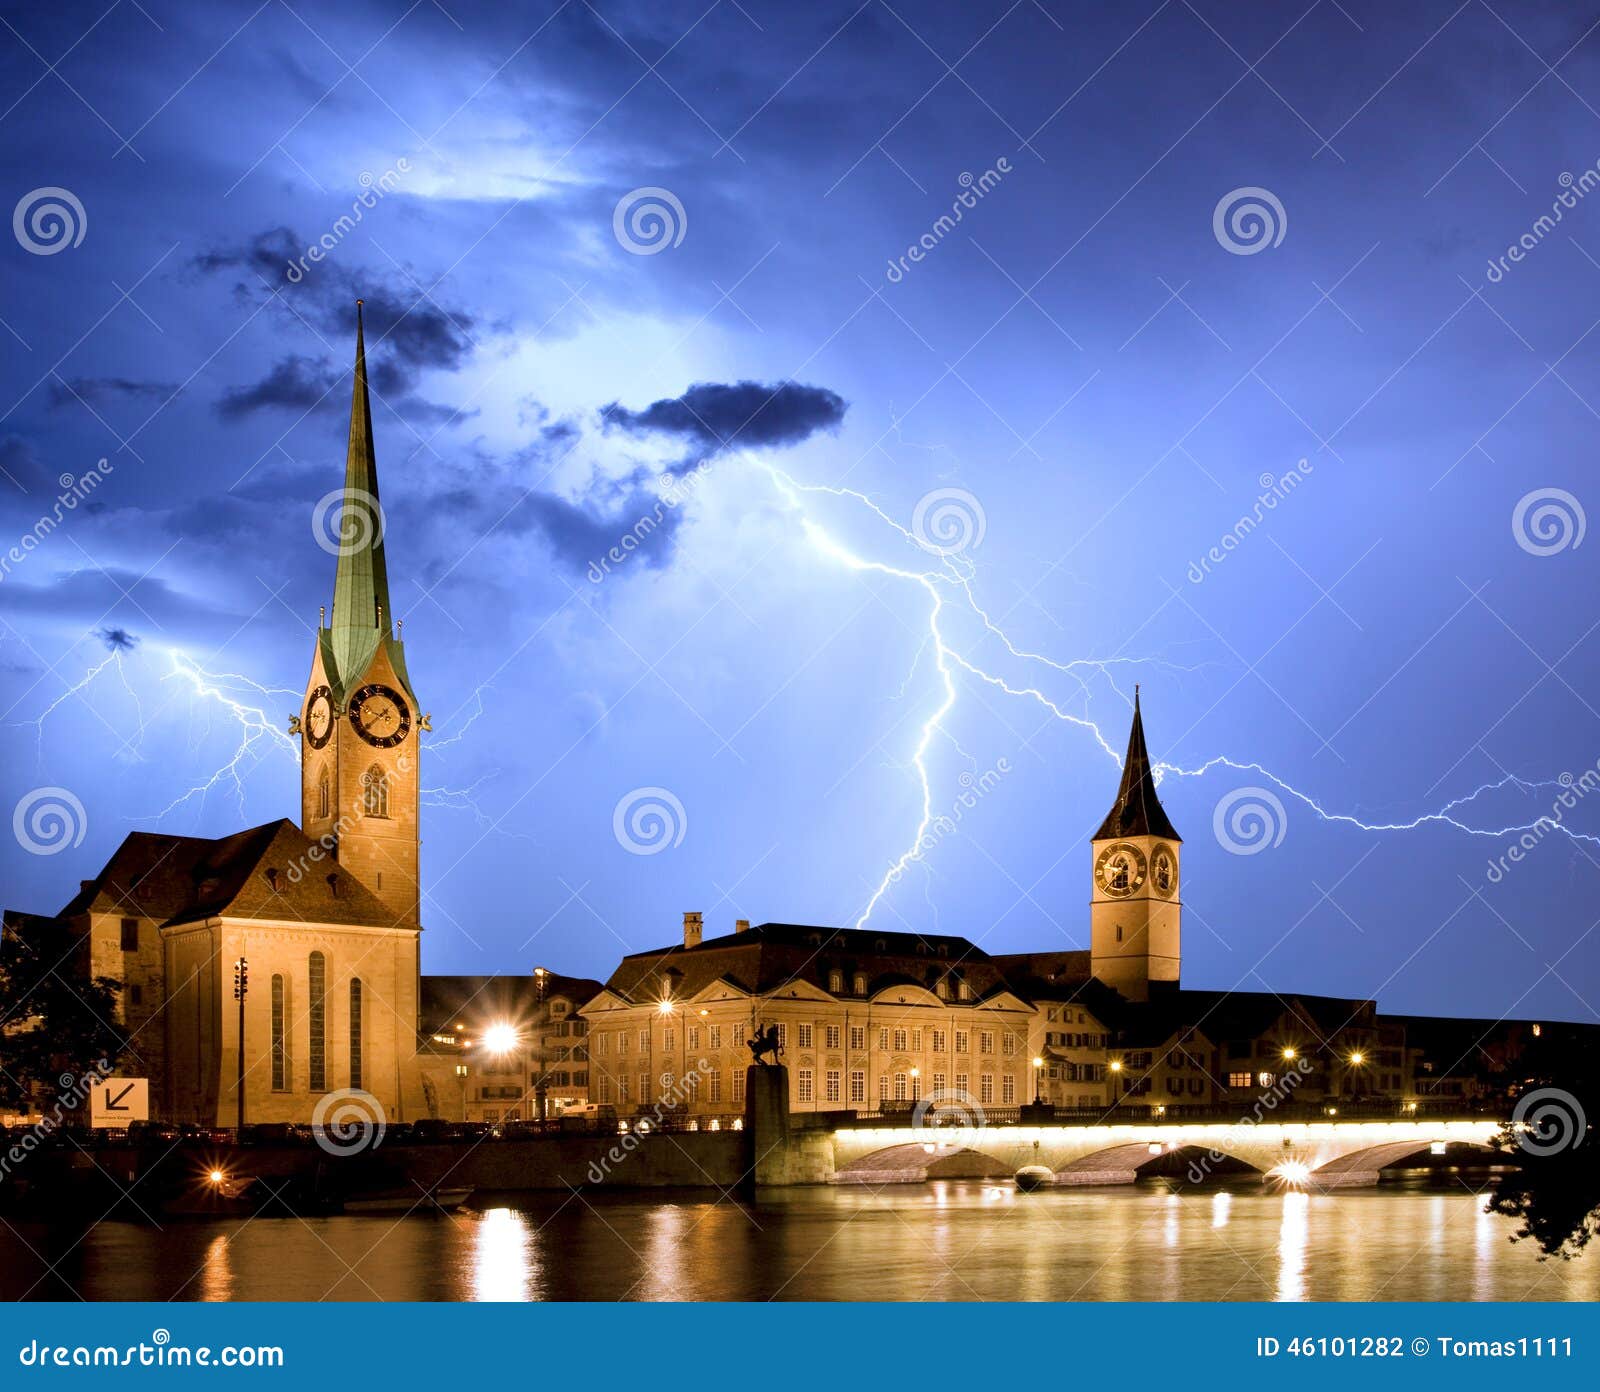 fraumunster - zurich with lightning